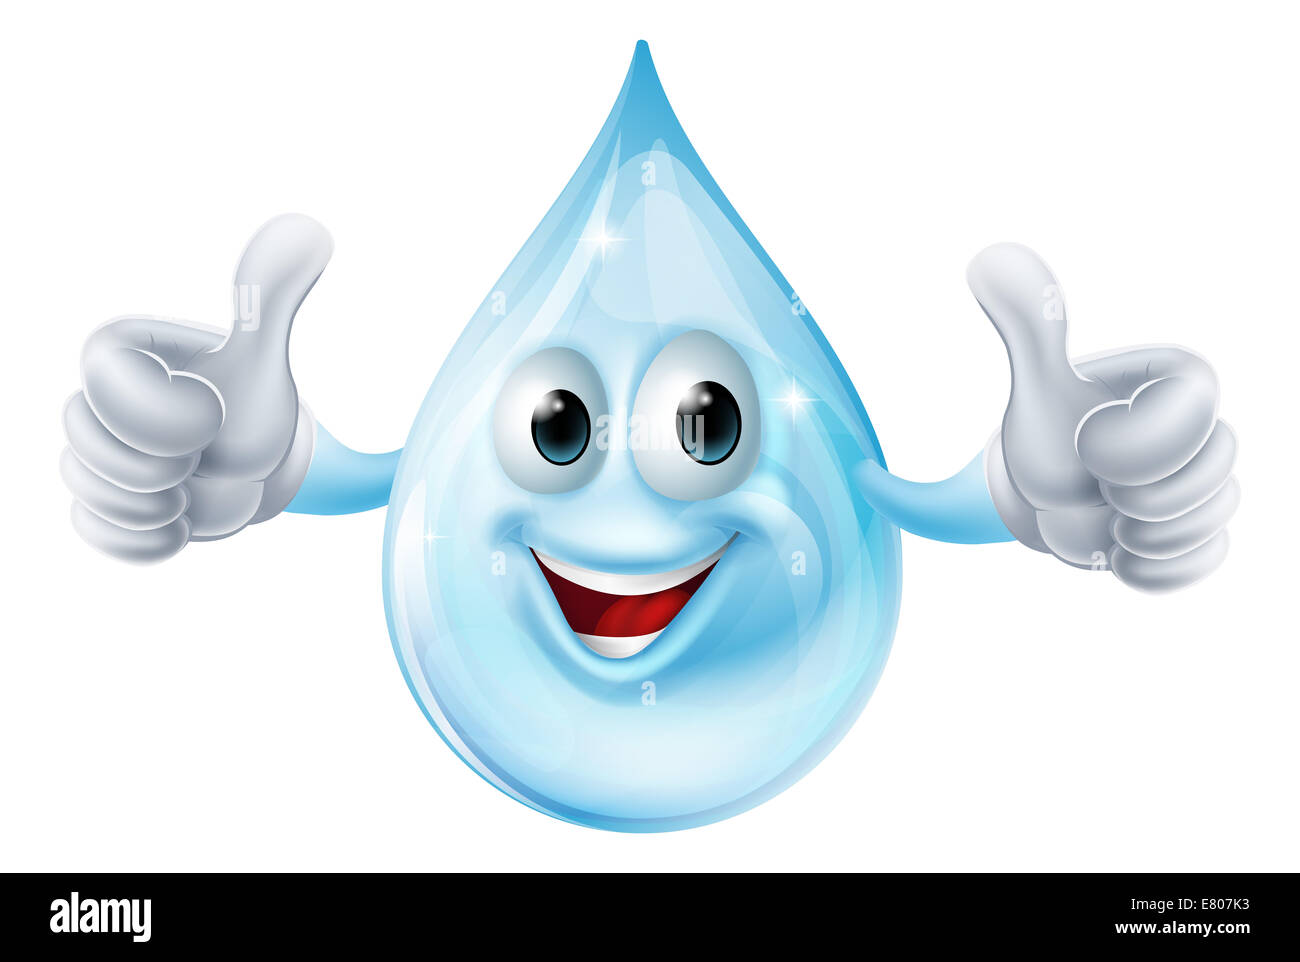 Une illustration d'une goutte d'eau donnant un caractère Thumbs up Banque D'Images